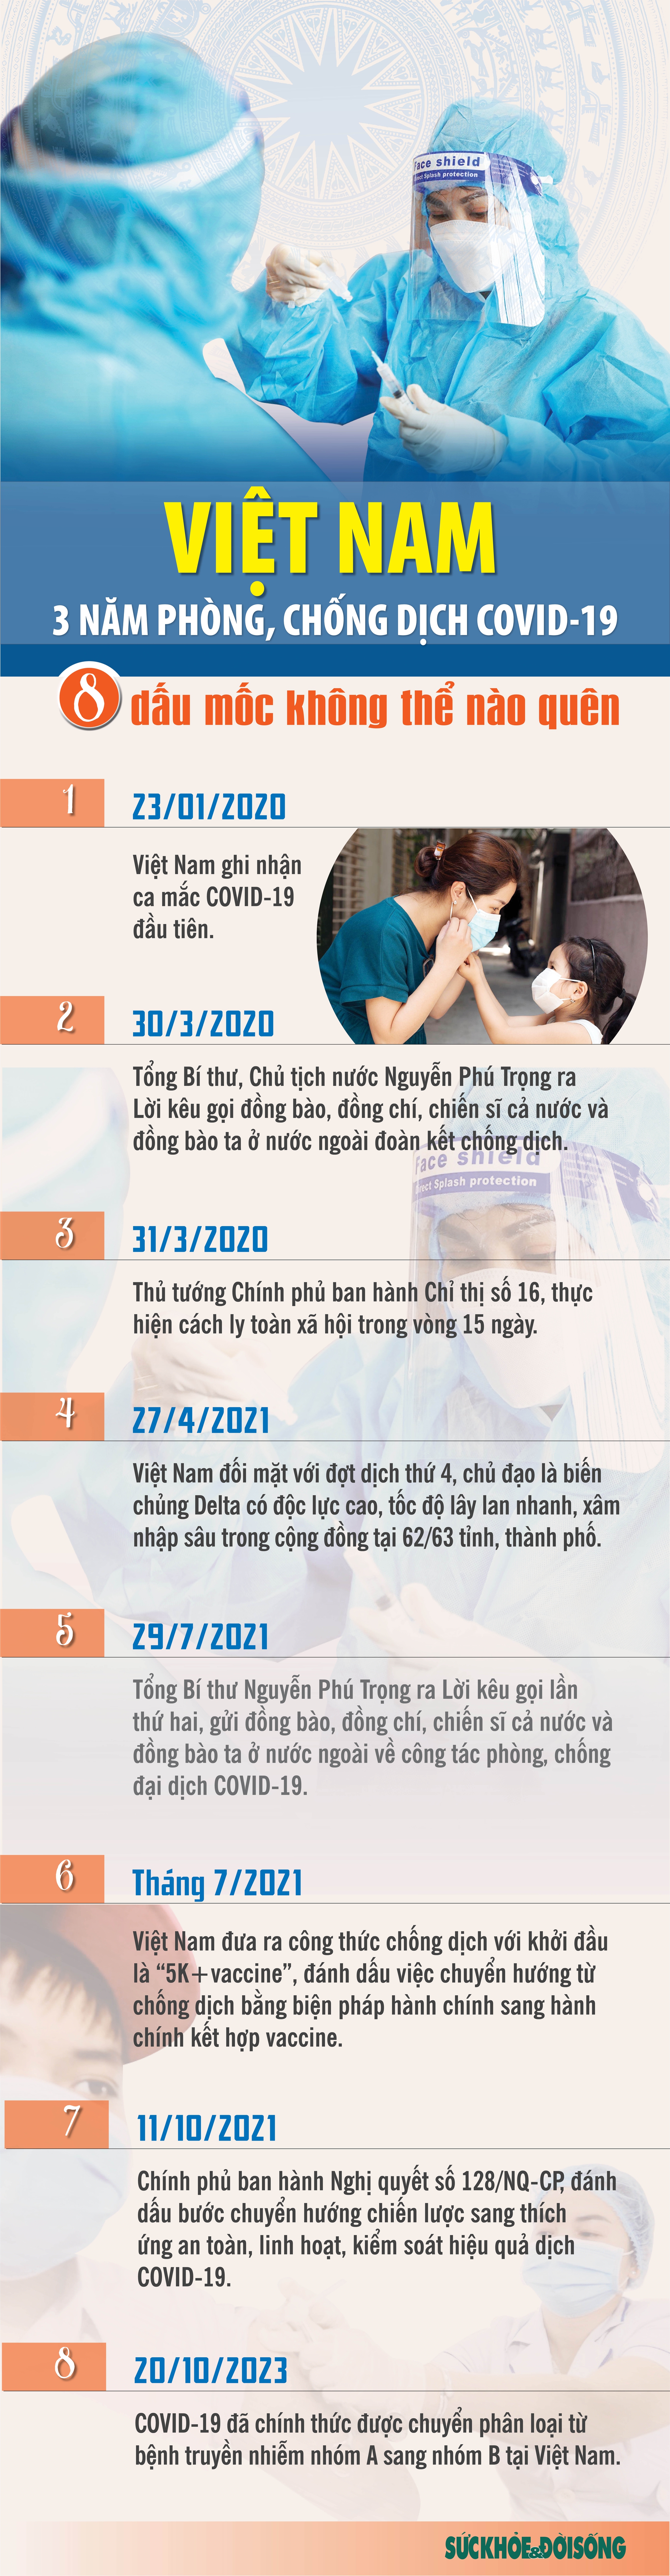 [Infographic] 8 dấu mốc không thể nào quên trong 3 năm phòng, chống dịch COVID-19 tại Việt Nam - Ảnh 1.